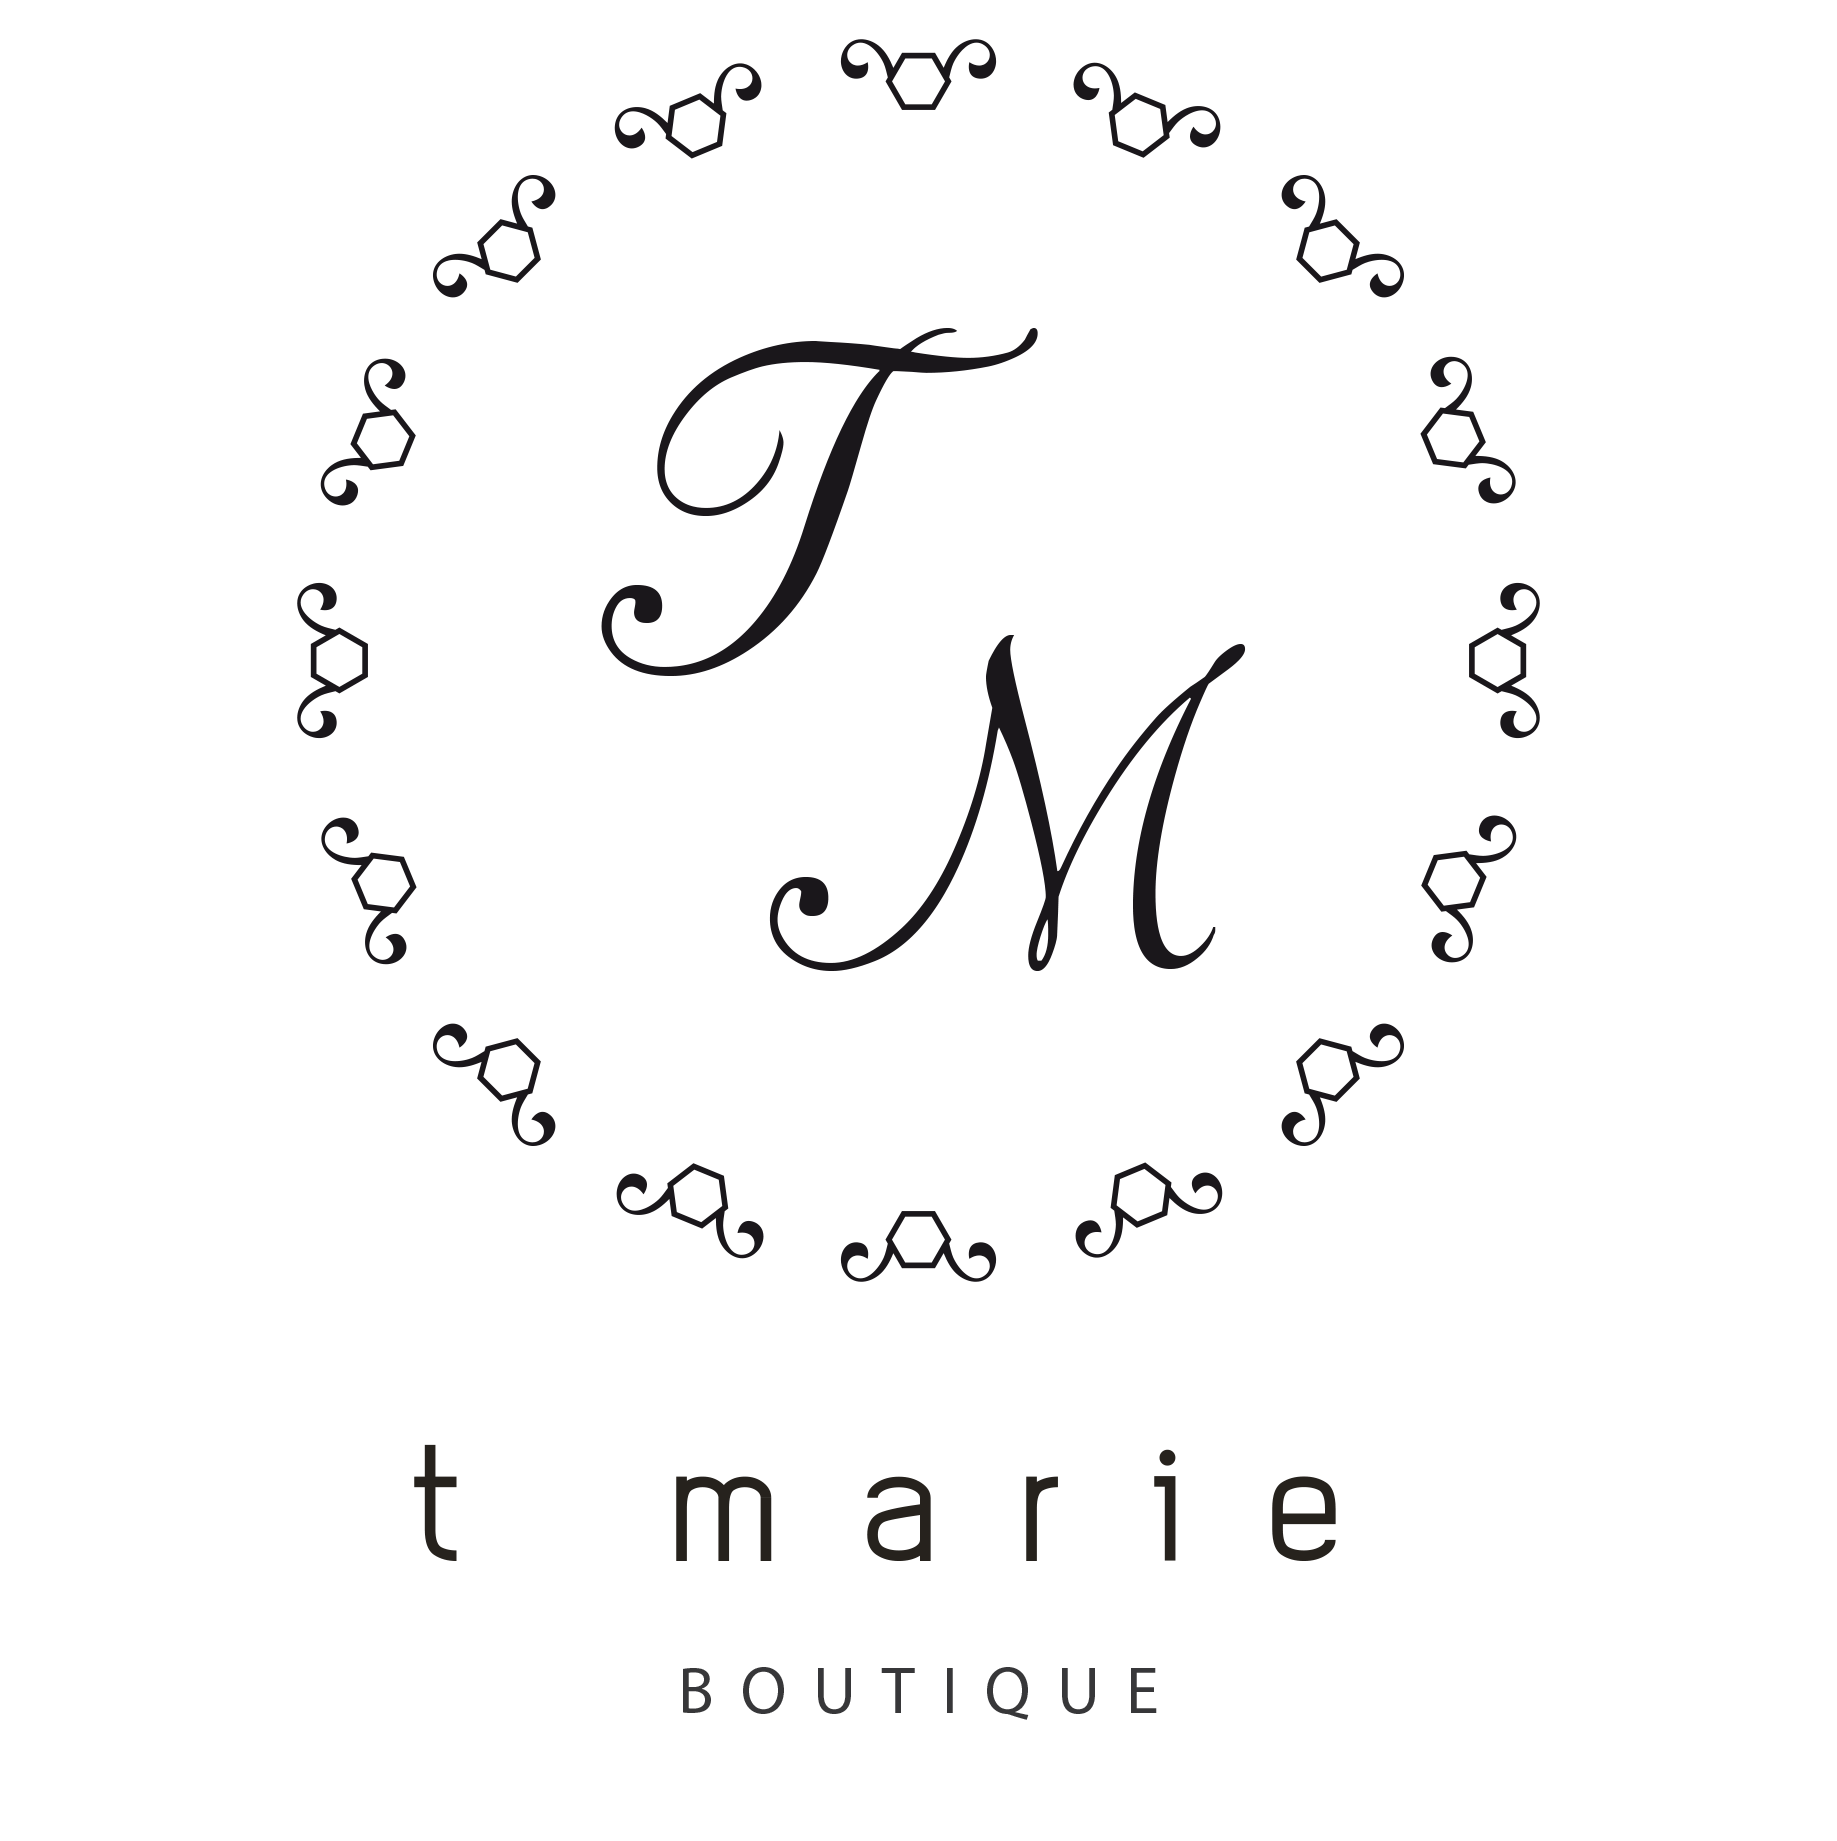 T Marie Boutique